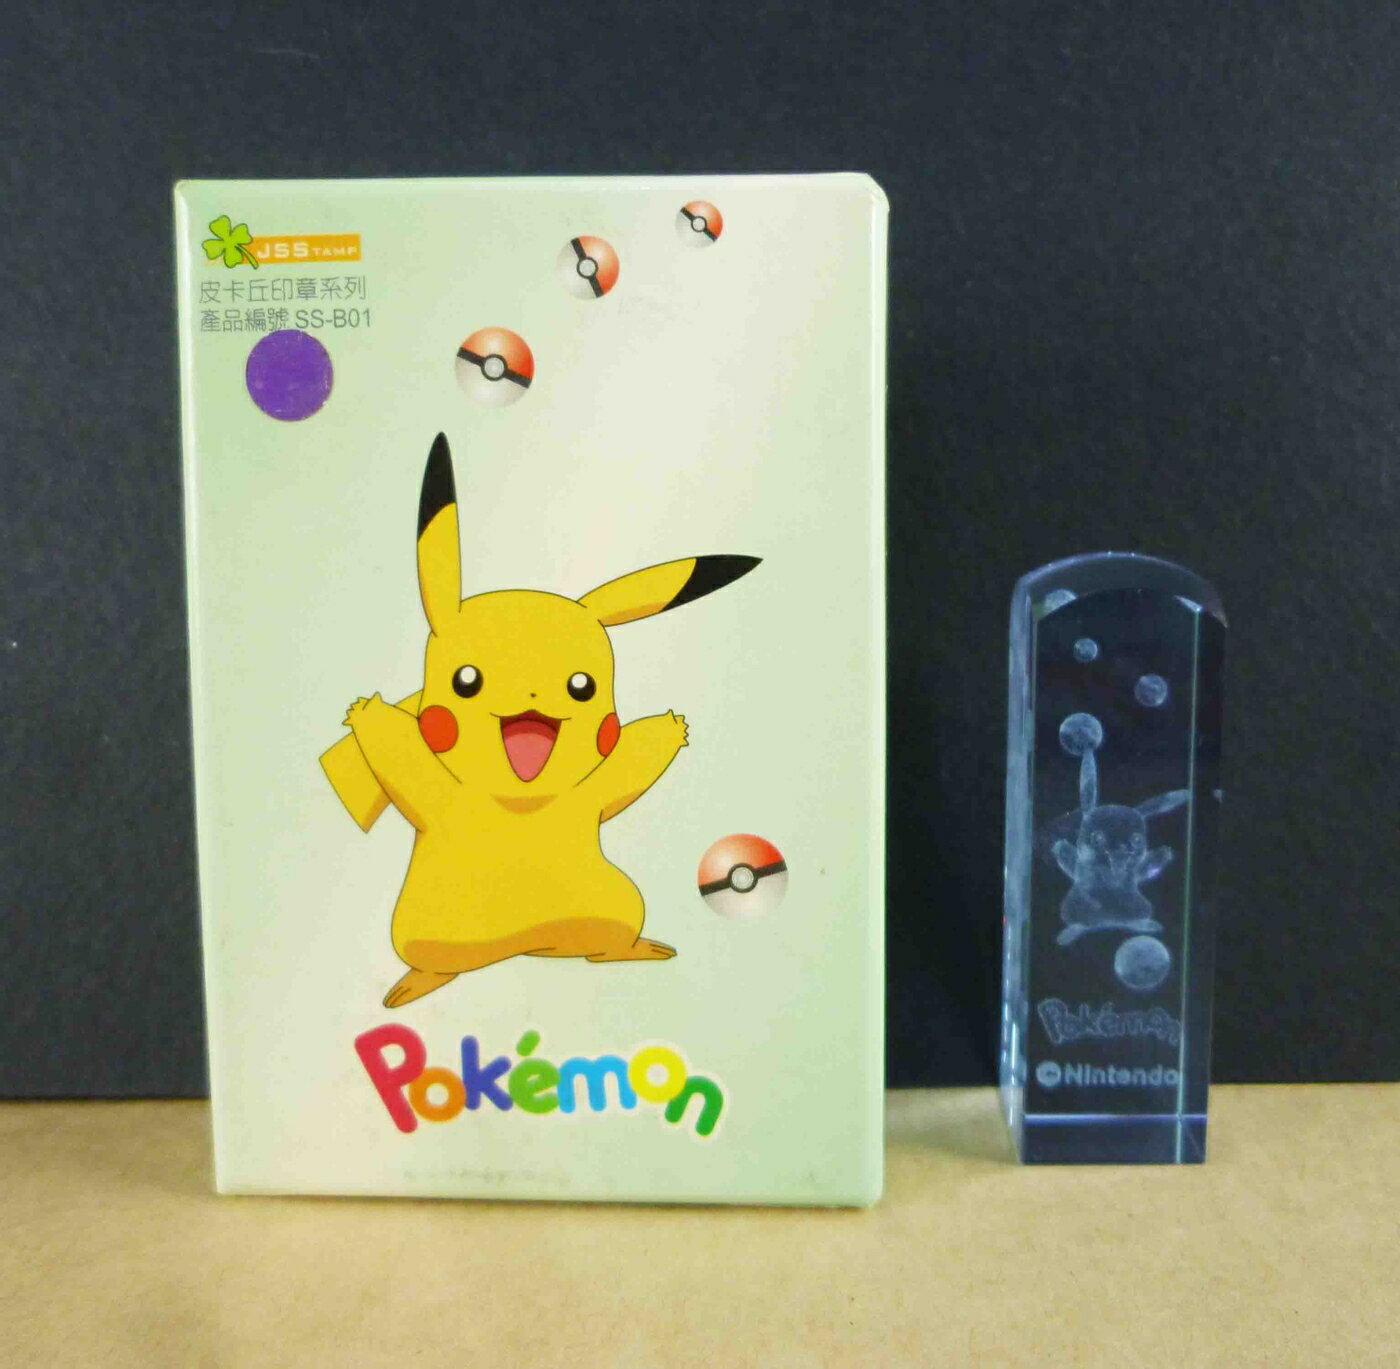 【震撼精品百貨】神奇寶貝 Pokemon 水晶印章-皮卡丘(藍) 震撼日式精品百貨